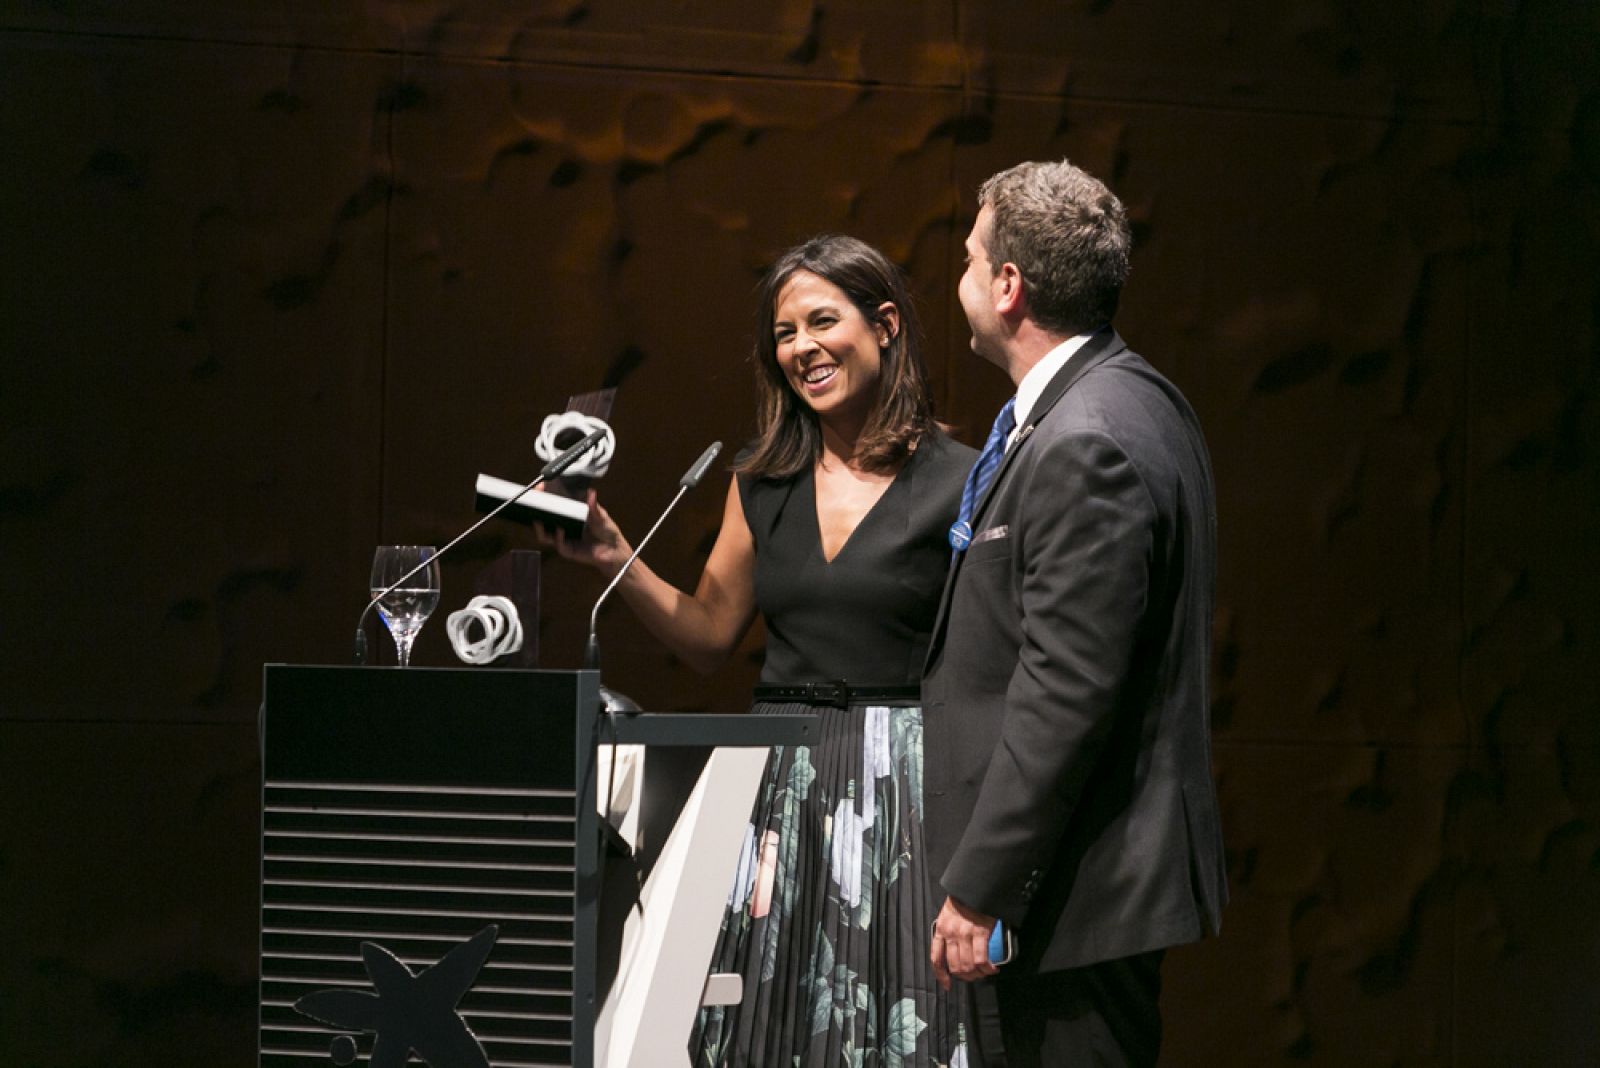 Mara Torres, que fue la presentadora de la gala, fue galardonada con uno de los Premios Corresponsables, por su implicación desinteresada en asuntos de responsabilidad social